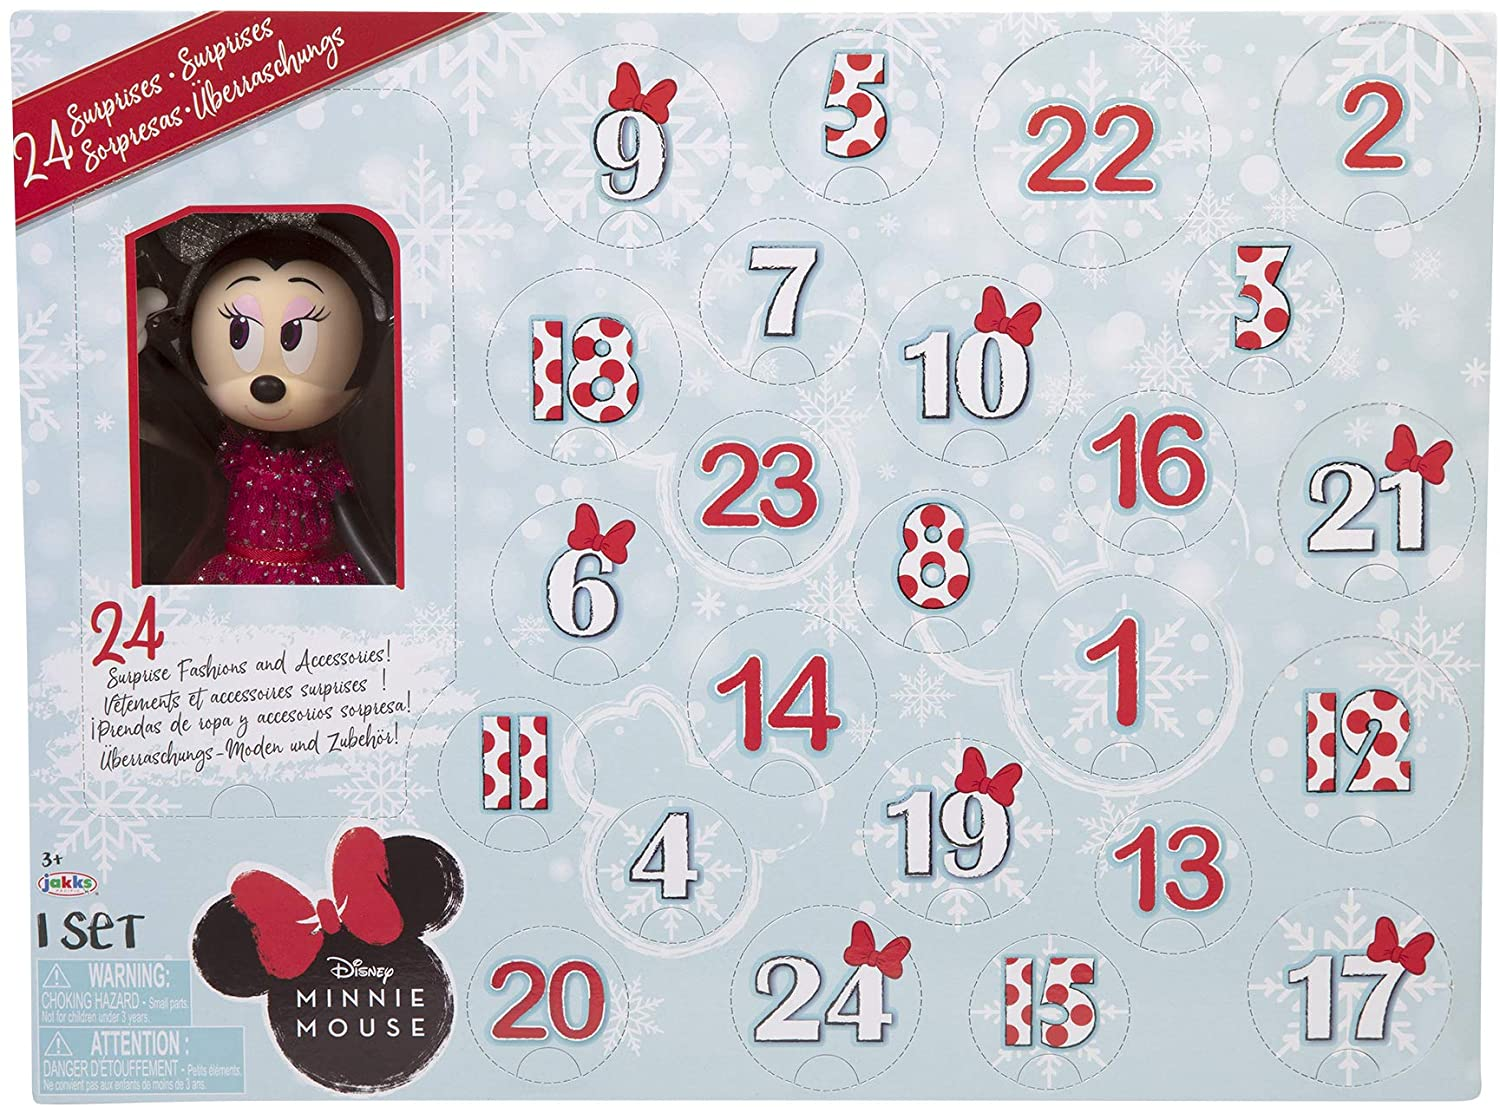 2020 Disney Minnie Mouse Advent Calendar Available Now! Hello